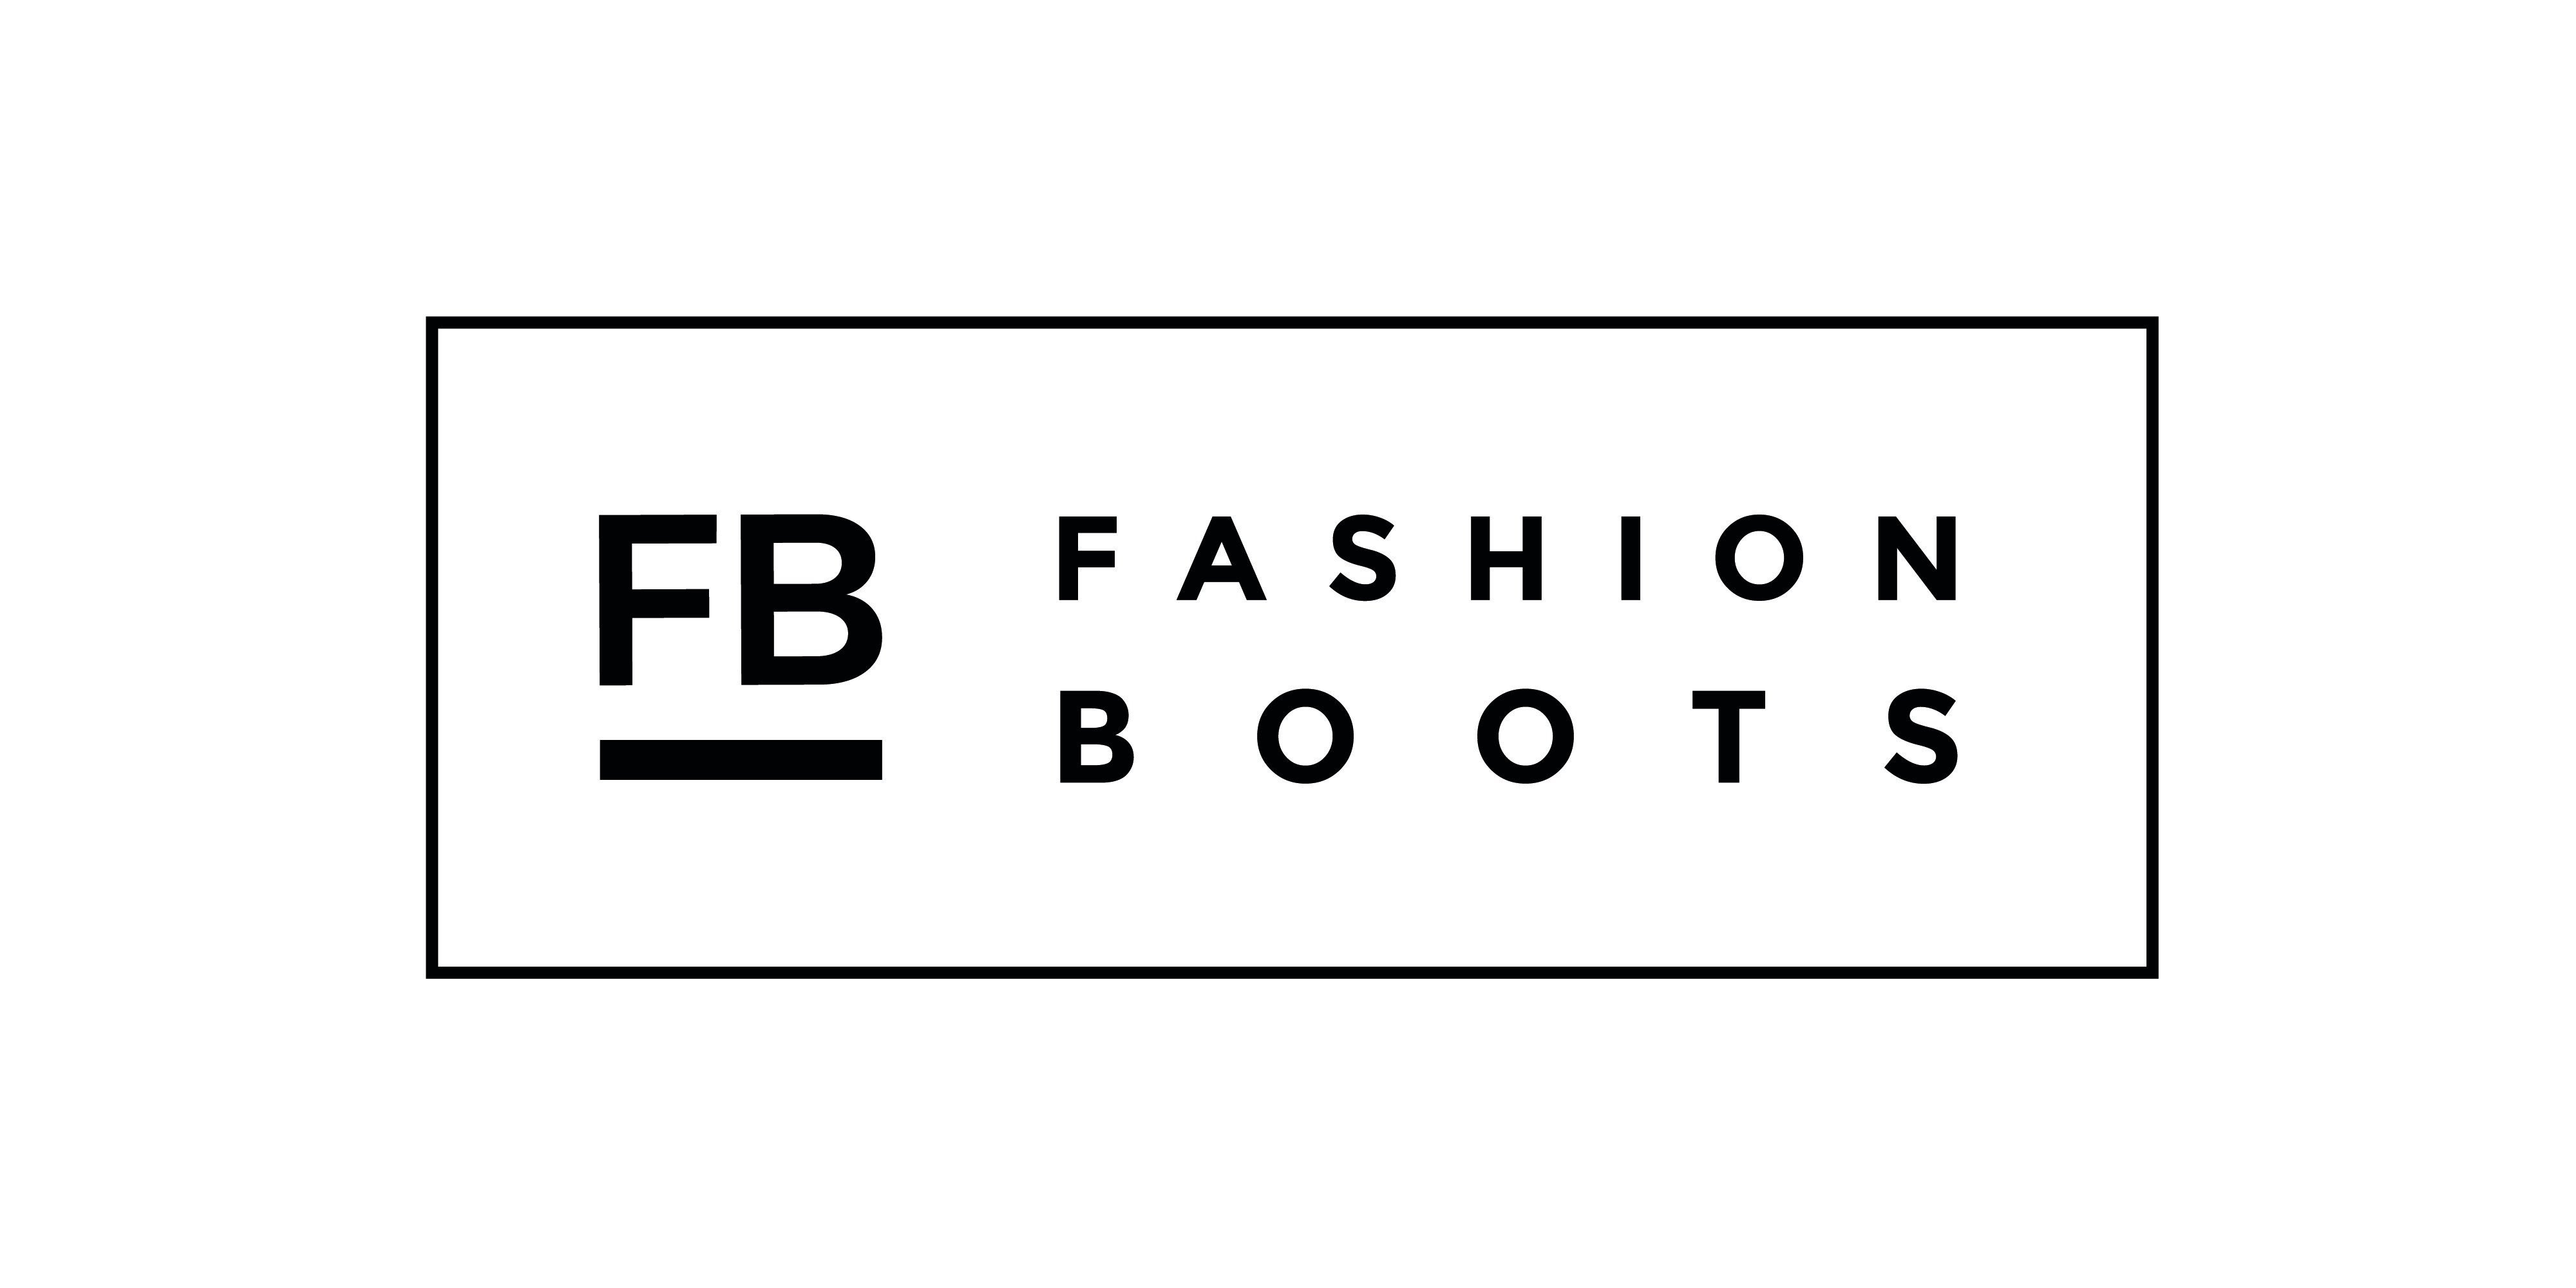 FB Fashion Boots